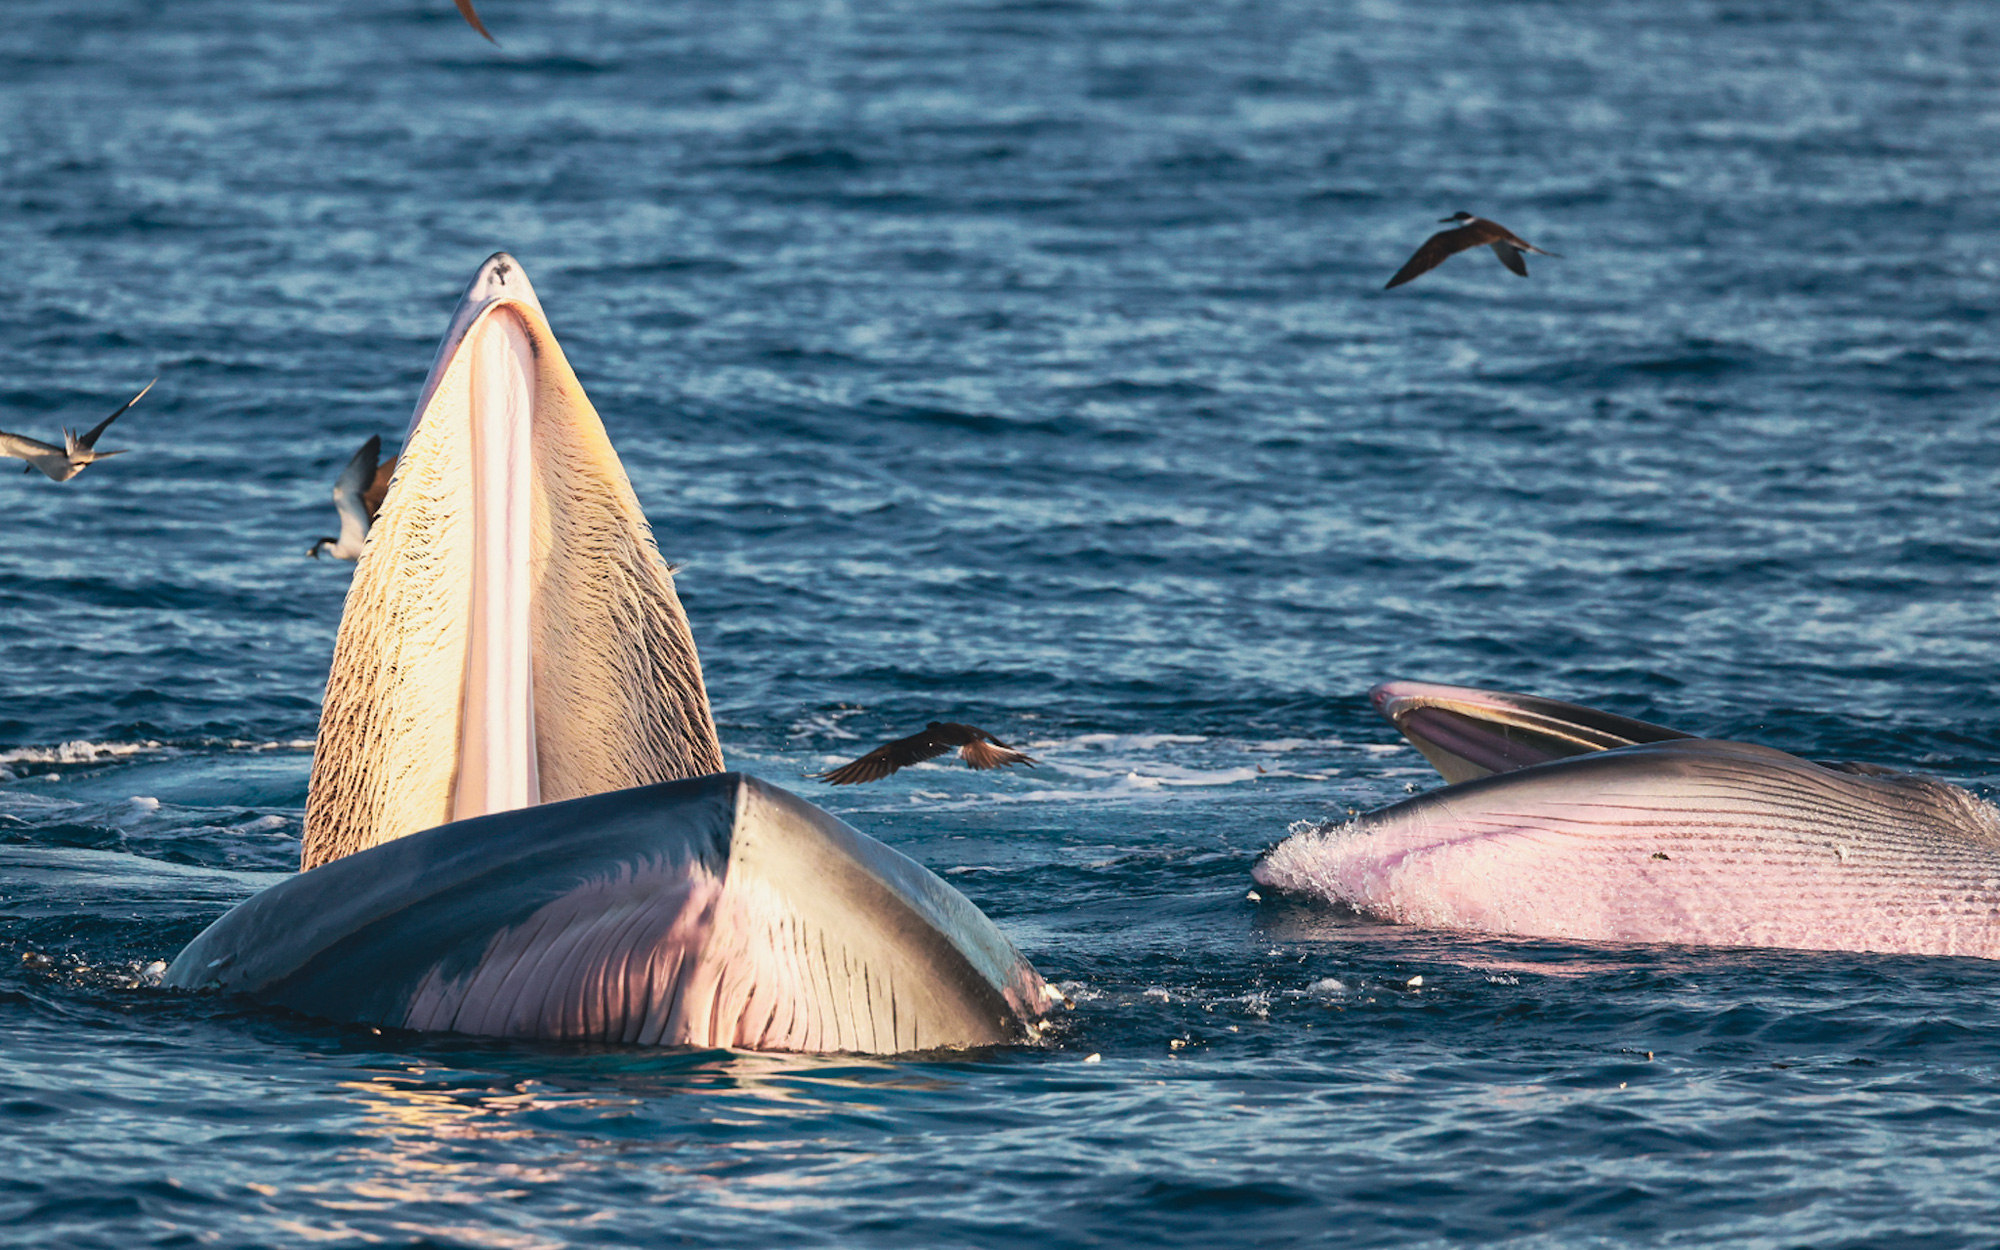 Nhiếp ảnh gia chia sẻ kinh nghiệm săn ảnh cá voi ở biển Đề Gi